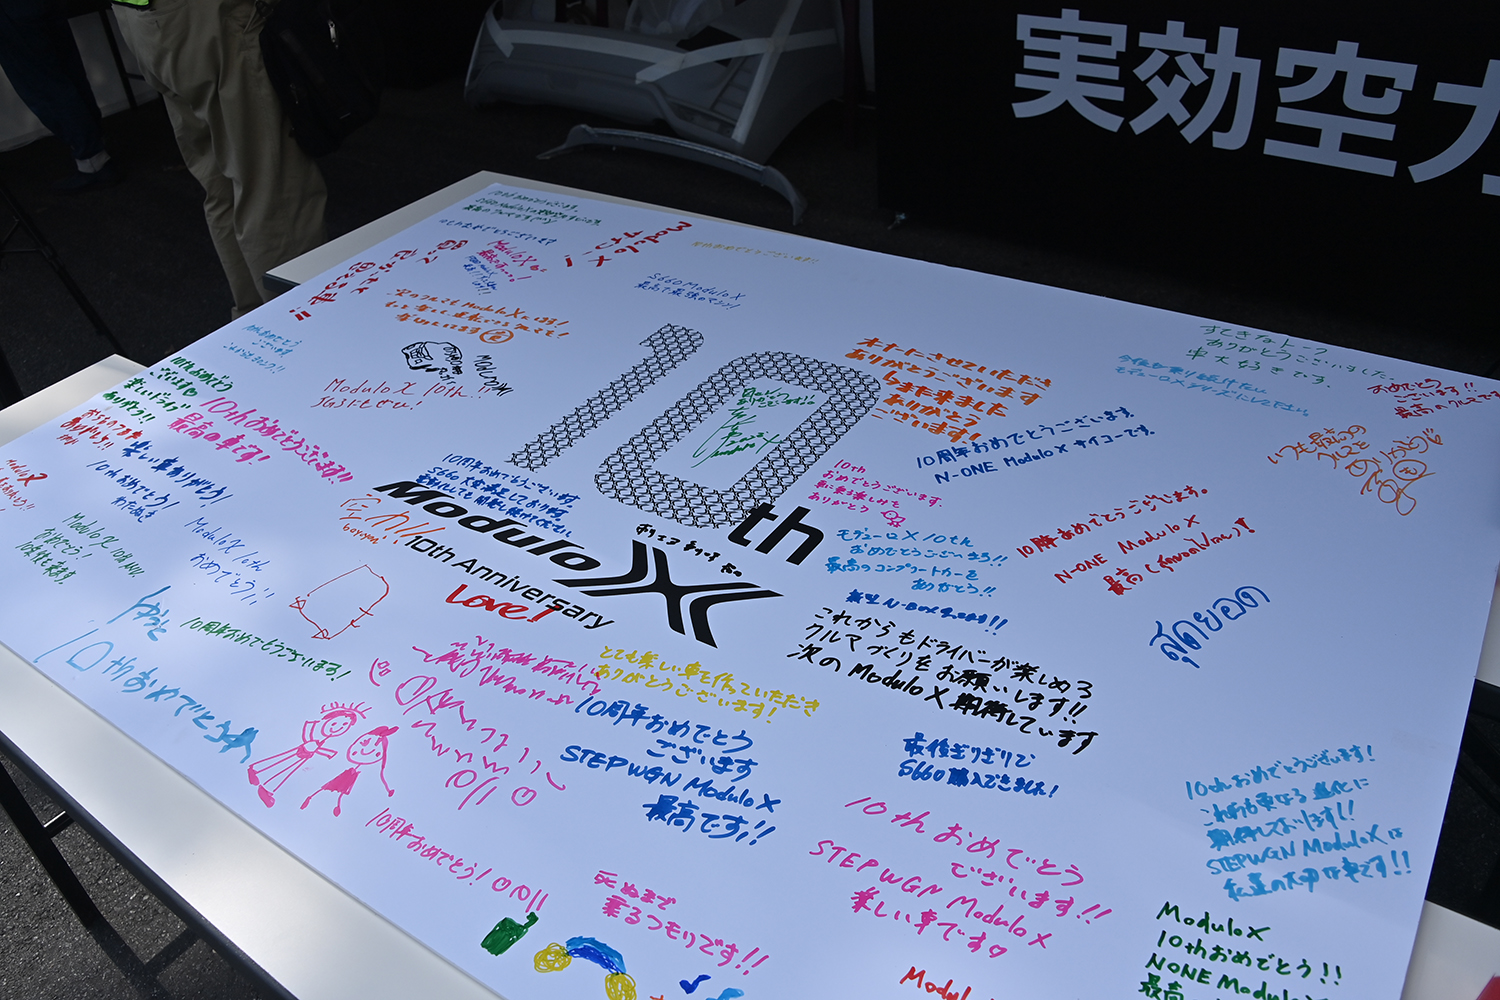 「Modulo Xシリーズ10周年記念オーナーズミーティングin群サイ」リポート 〜 画像49